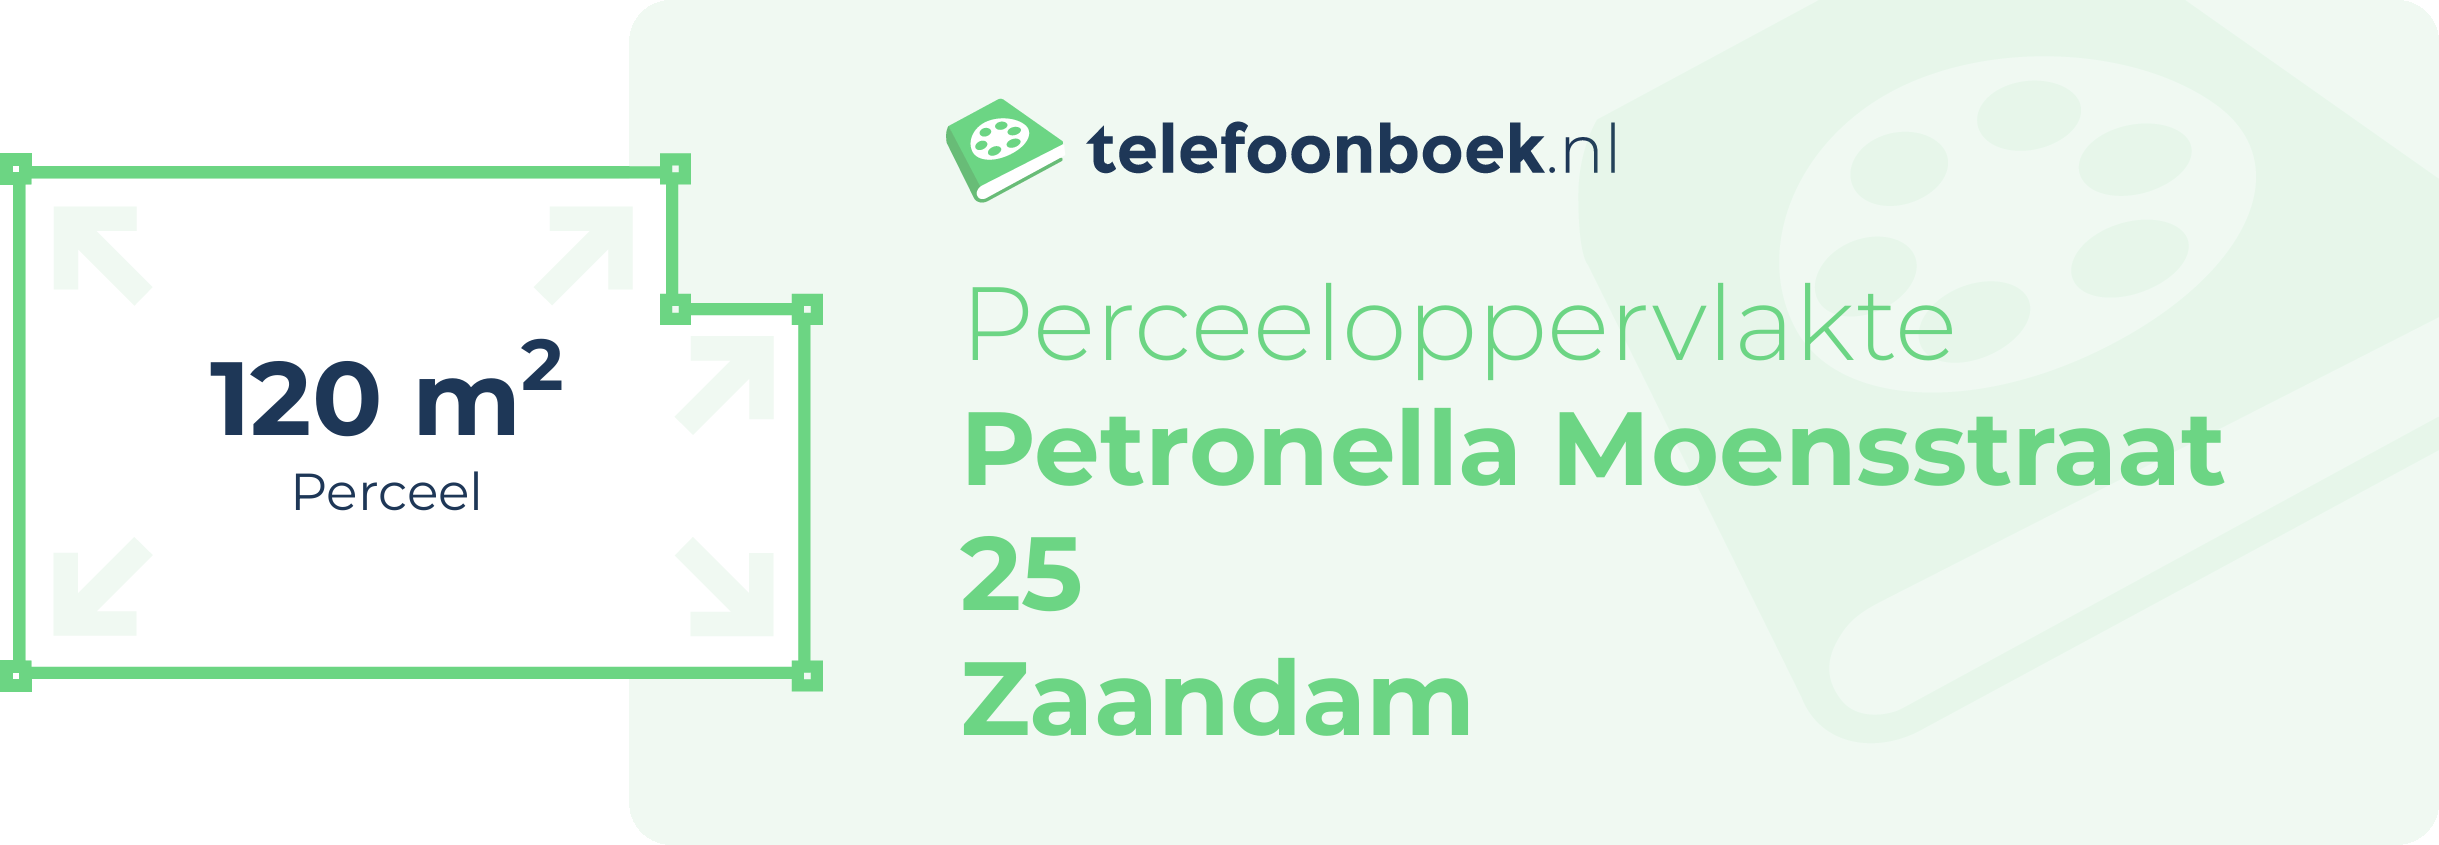 Perceeloppervlakte Petronella Moensstraat 25 Zaandam